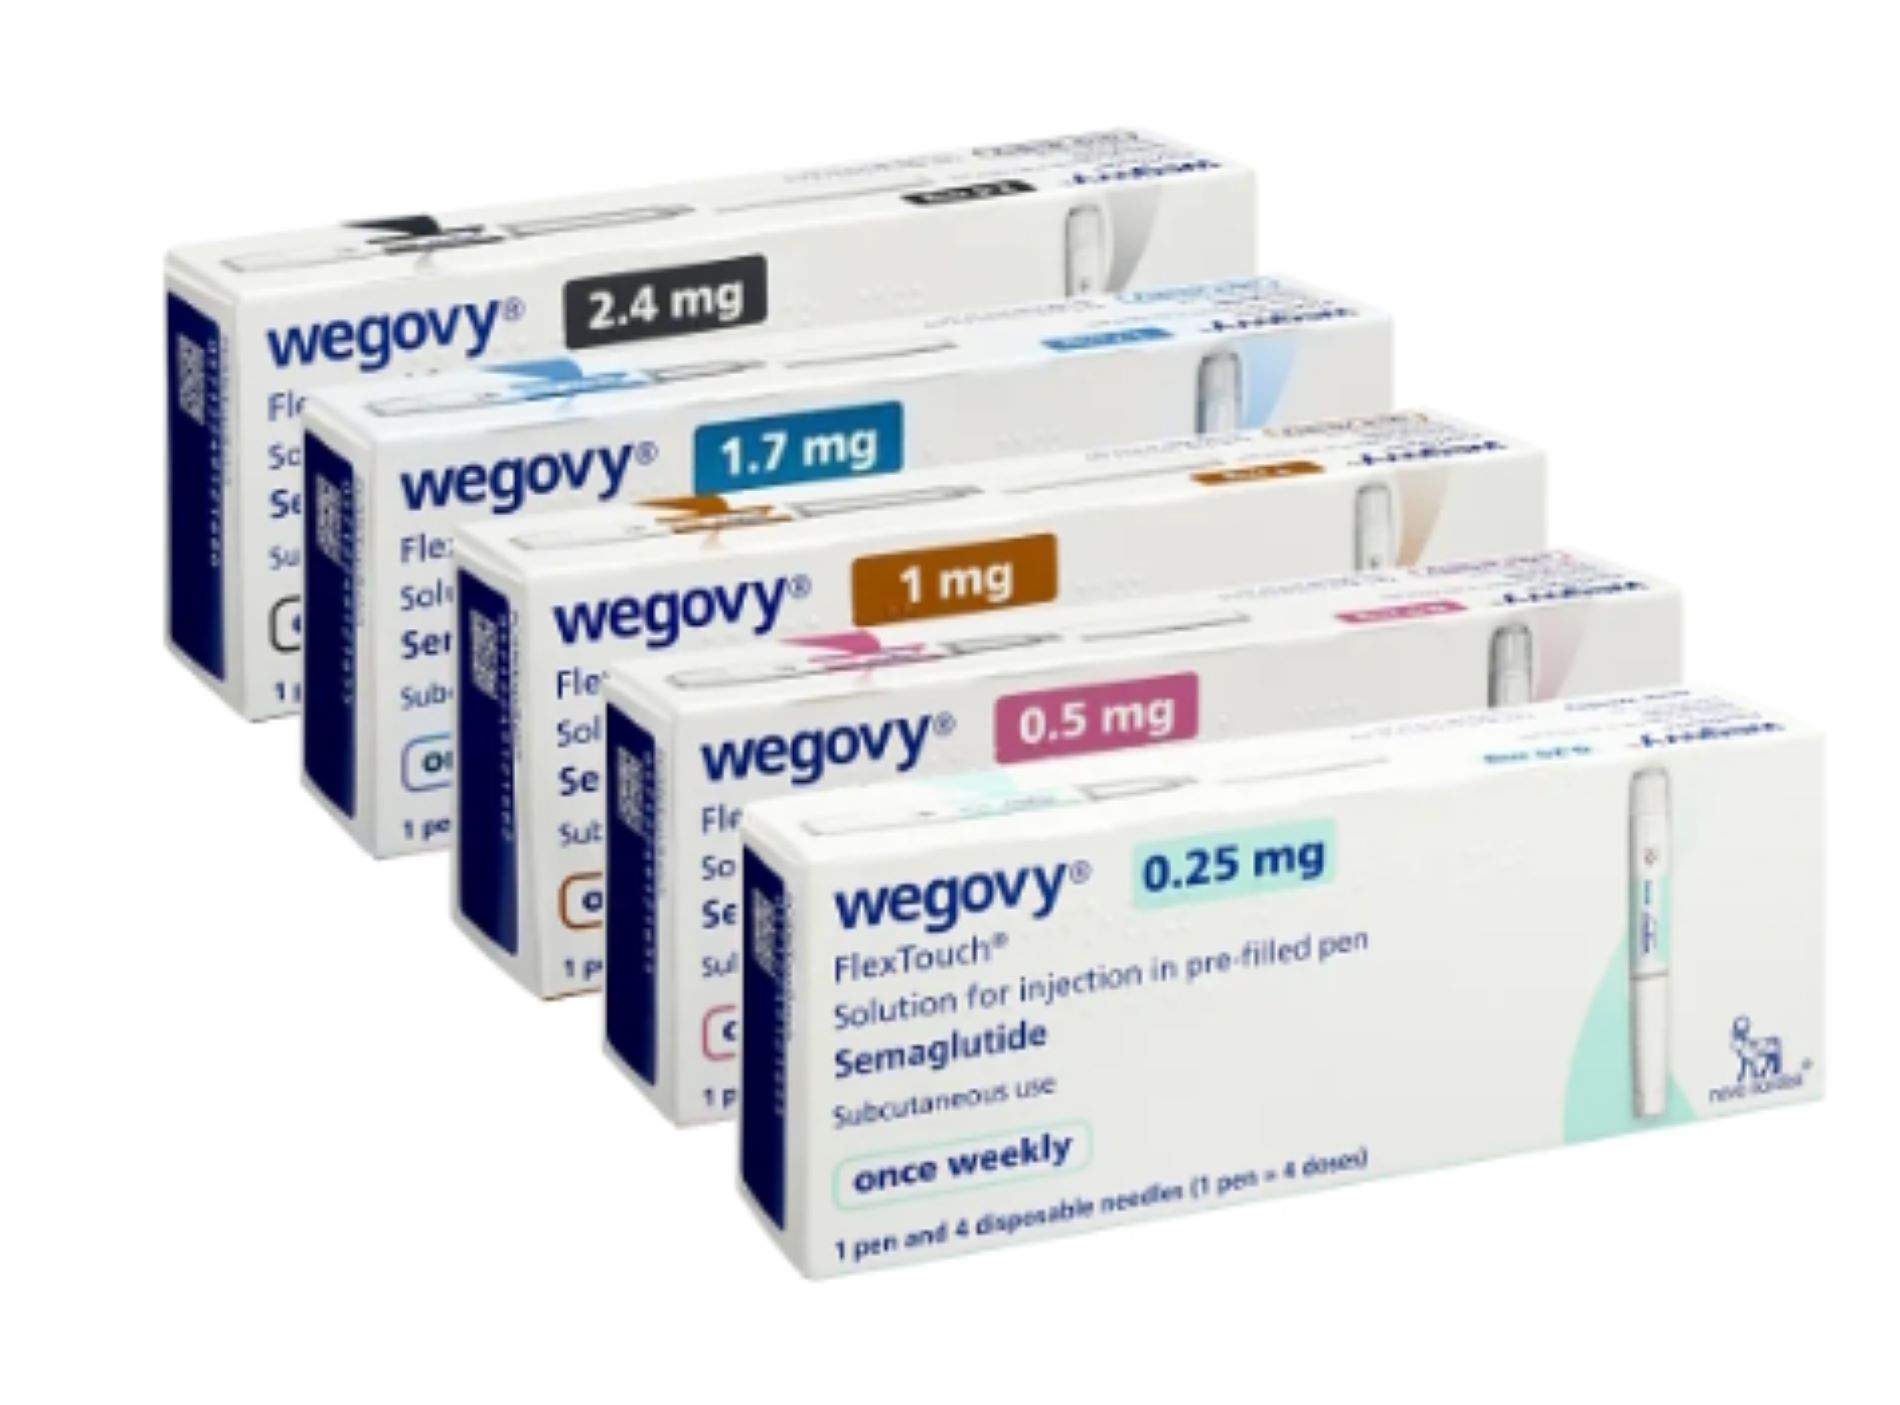 Llega a las farmacias Wegovy, el fármaco contra la obesidad alternativo al Ozempic necesario para diabéticos